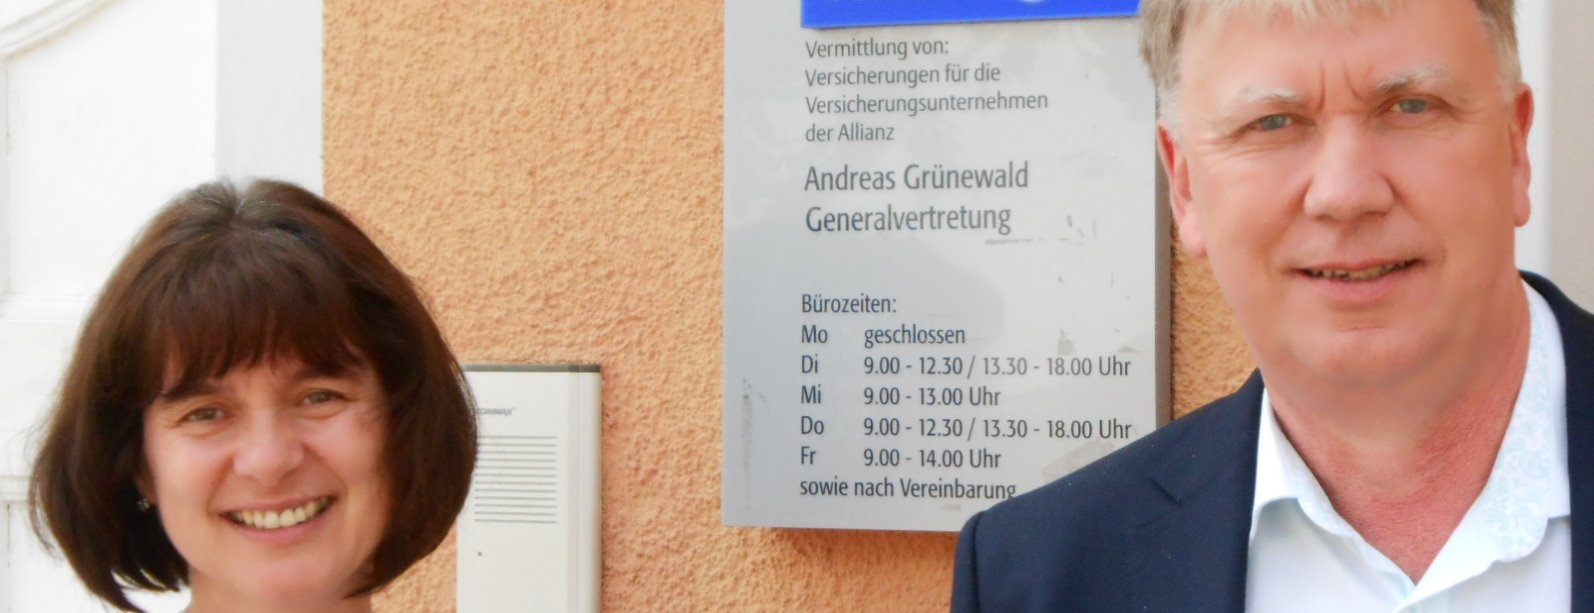 Allianz Versicherung Andreas Grünewald Bad Frankenhausen - Titelbild